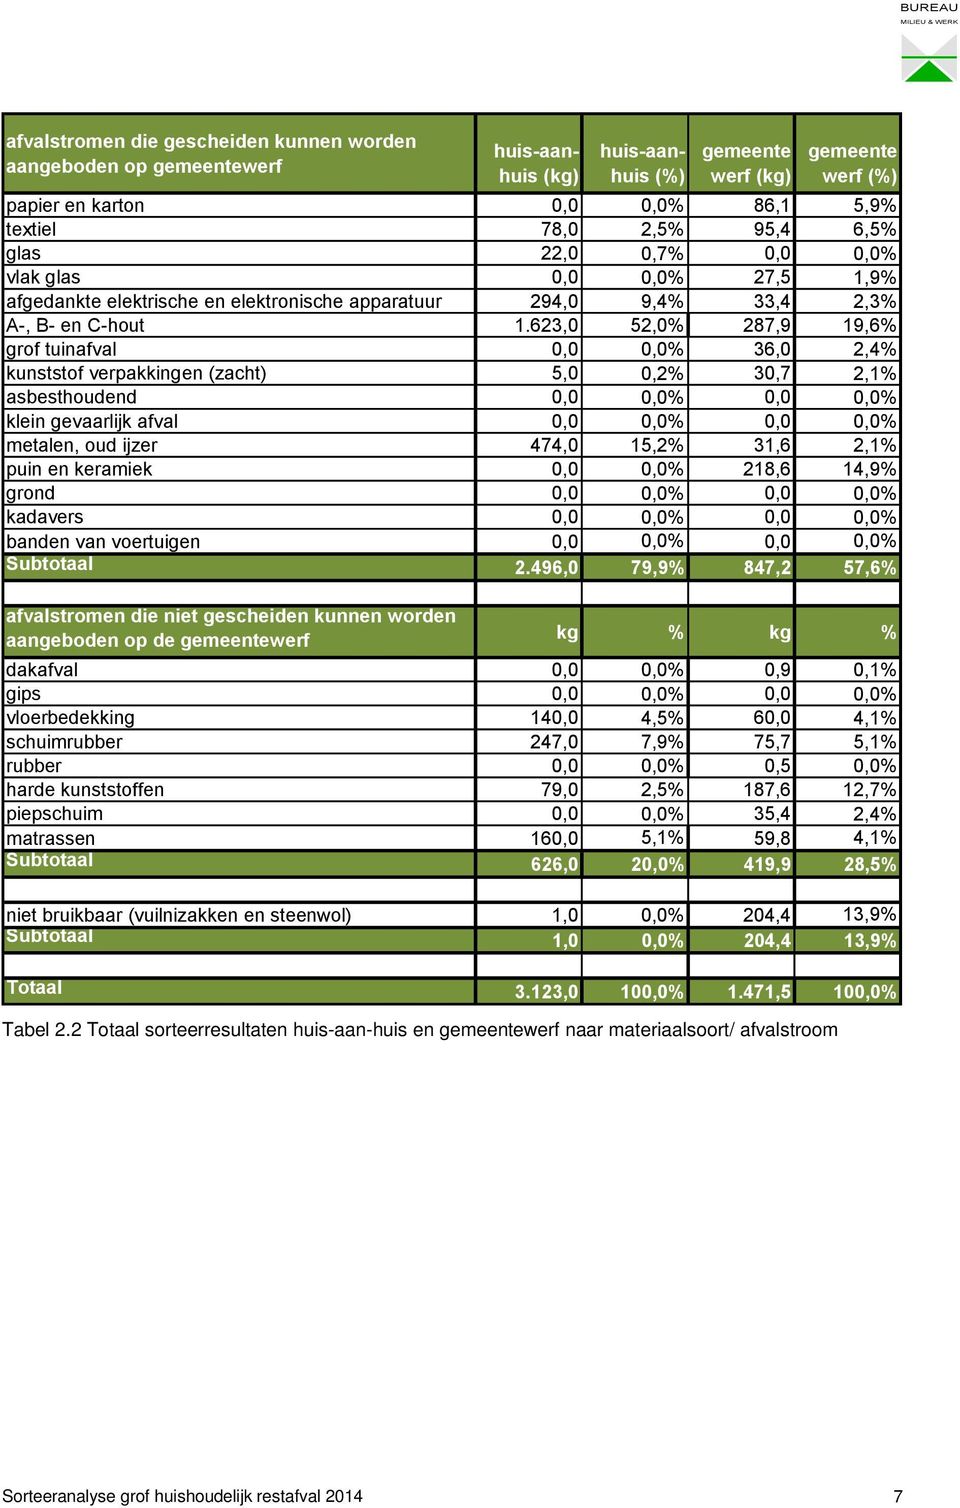 623,0 52,0% 287,9 19,6% grof tuinafval 0,0 0,0% 36,0 2,4% kunststof verpakkingen (zacht) 5,0 0,2% 30,7 2,1% asbesthoudend 0,0 0,0% 0,0 0,0% klein gevaarlijk afval 0,0 0,0% 0,0 0,0% metalen, oud ijzer